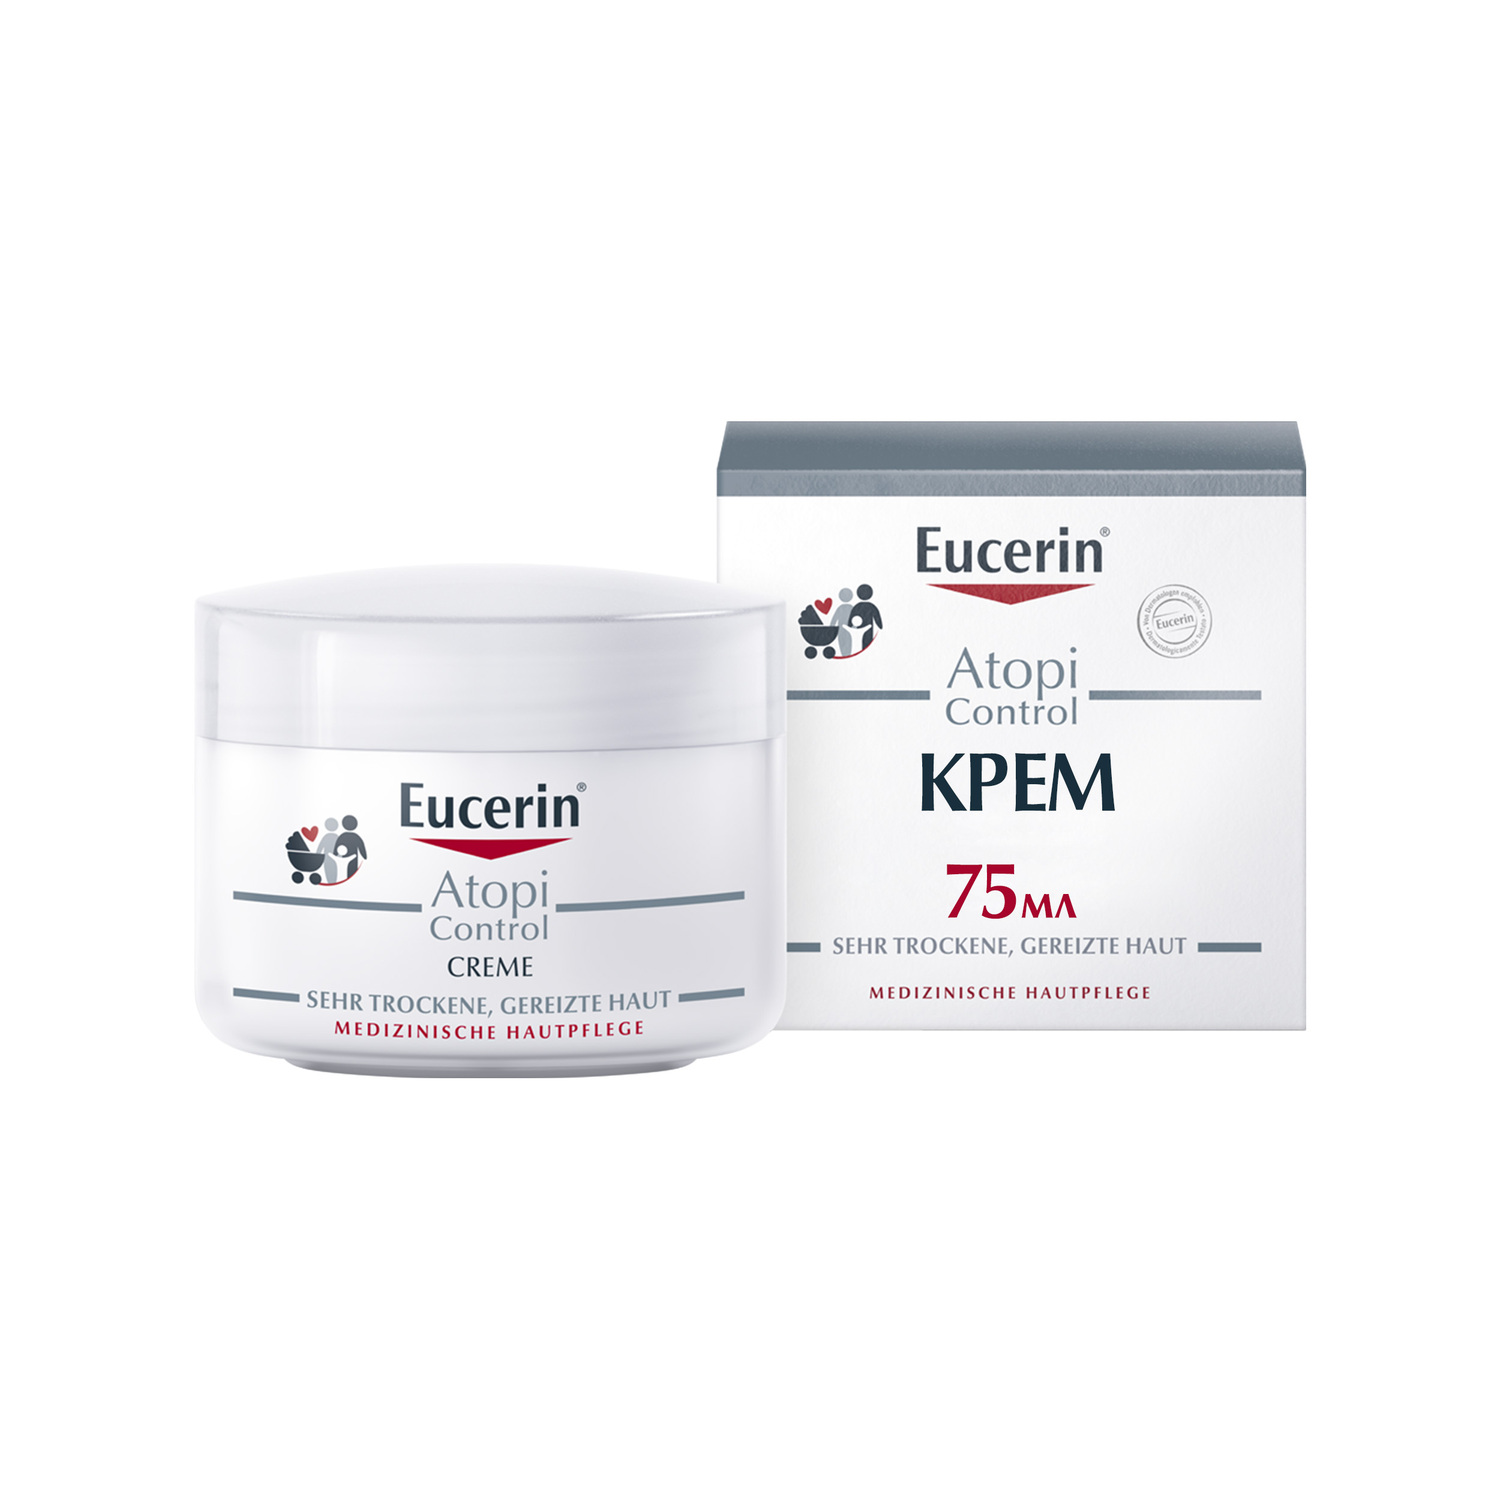 Eucerin Крем для взрослых, детей и младенцев, 75 мл (Eucerin, Atopi Control)